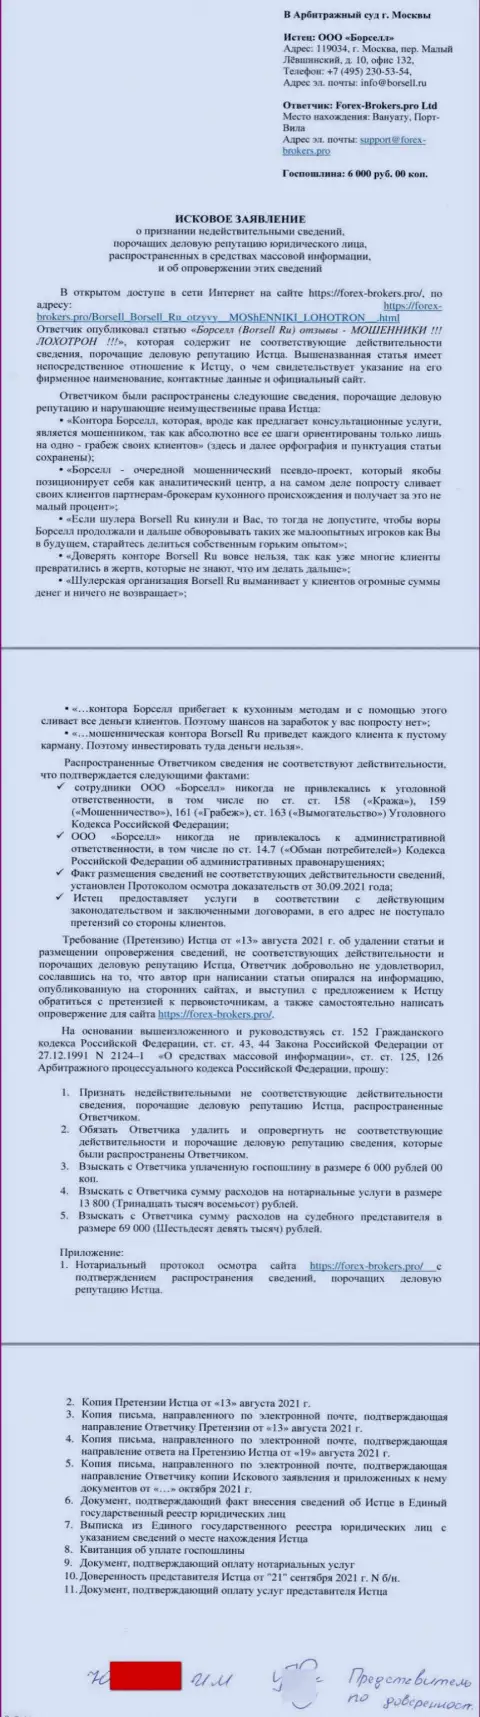 Само исковое заявление в суд от некого представителя аналитической конторы ООО БОРСЕЛЛ